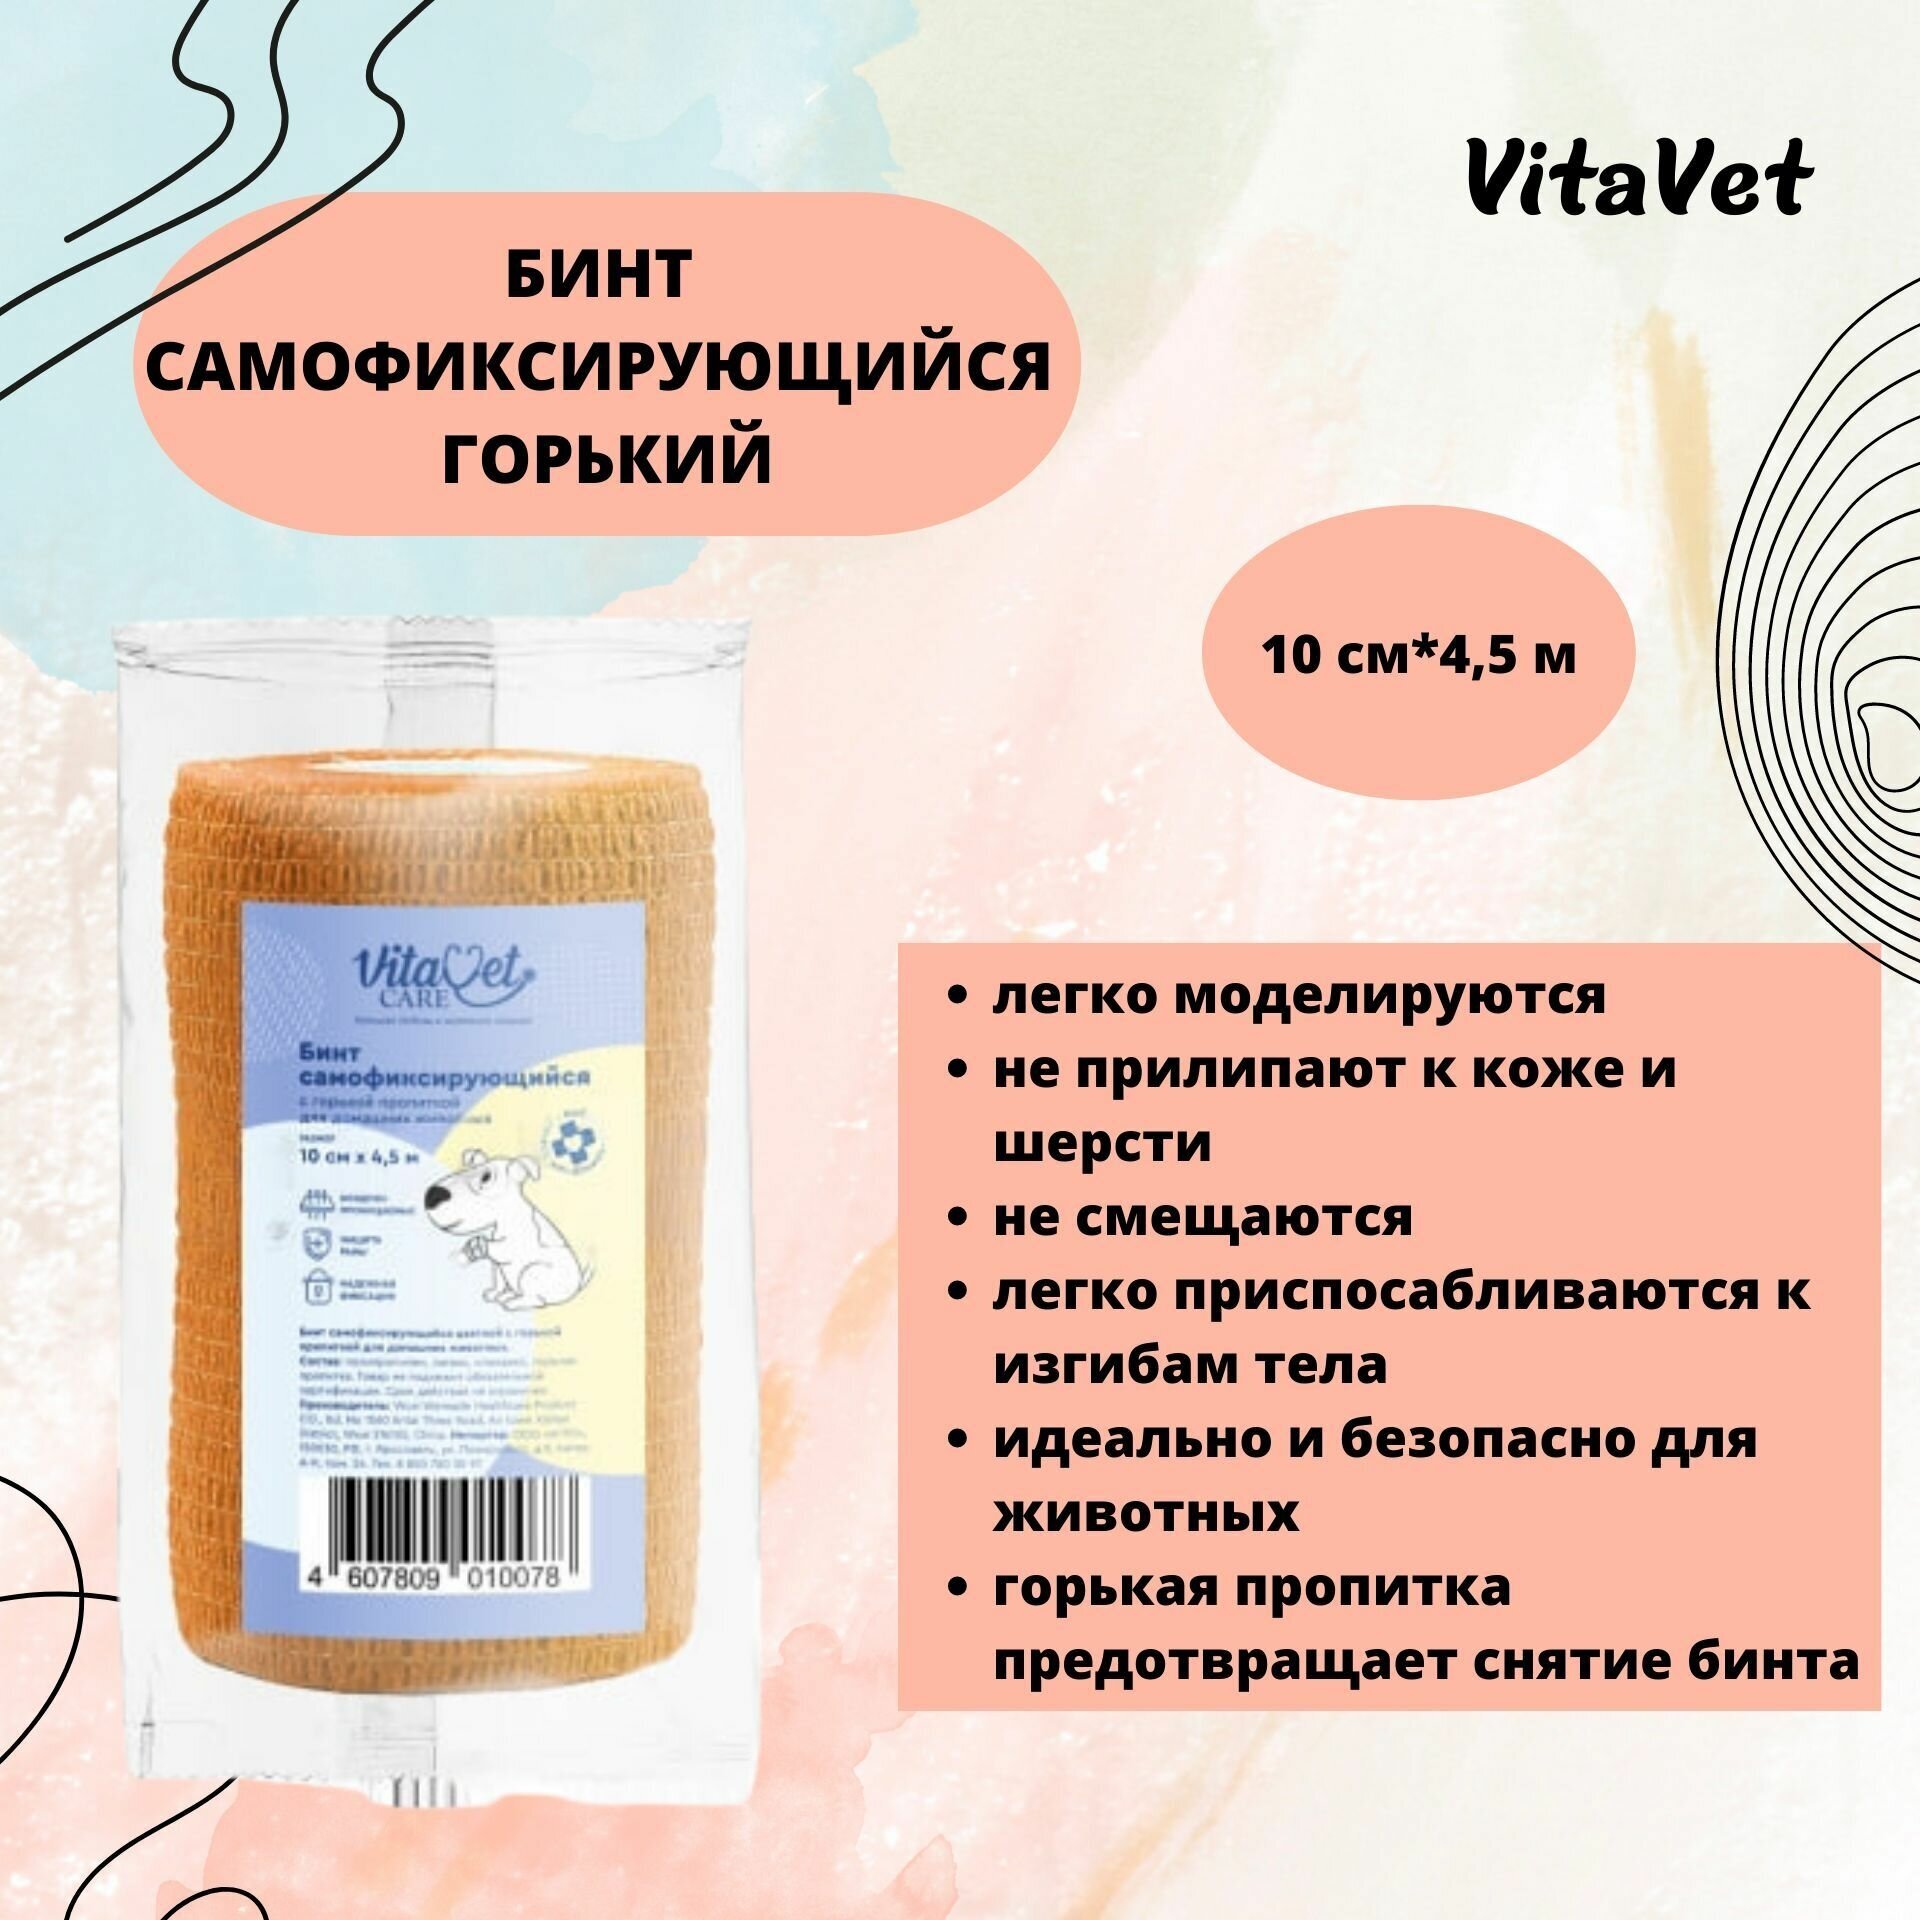 Бинт VitaVet CARE самофиксирующийся, горький, цветной, 10 см х 4,5 м